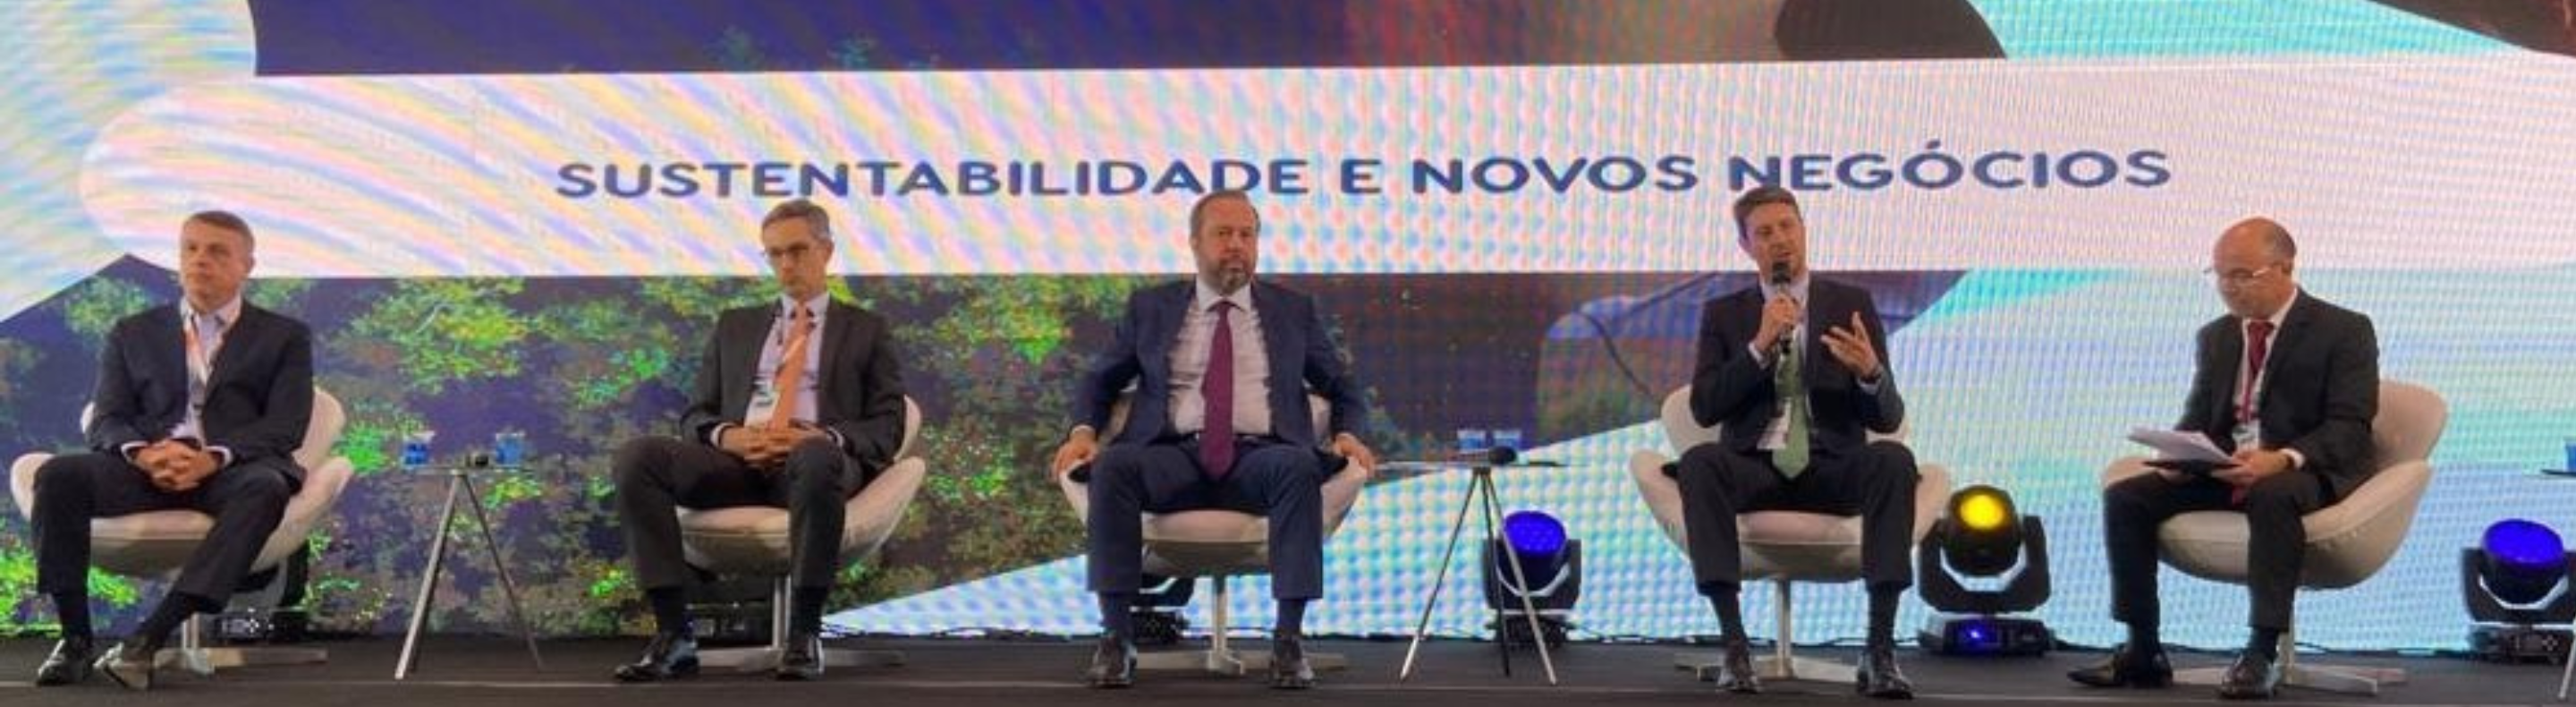 Eduardo Capelastegui, CEO da Neoenergia, participa de evento da Previ sobre sustentabilidad e novos negócios